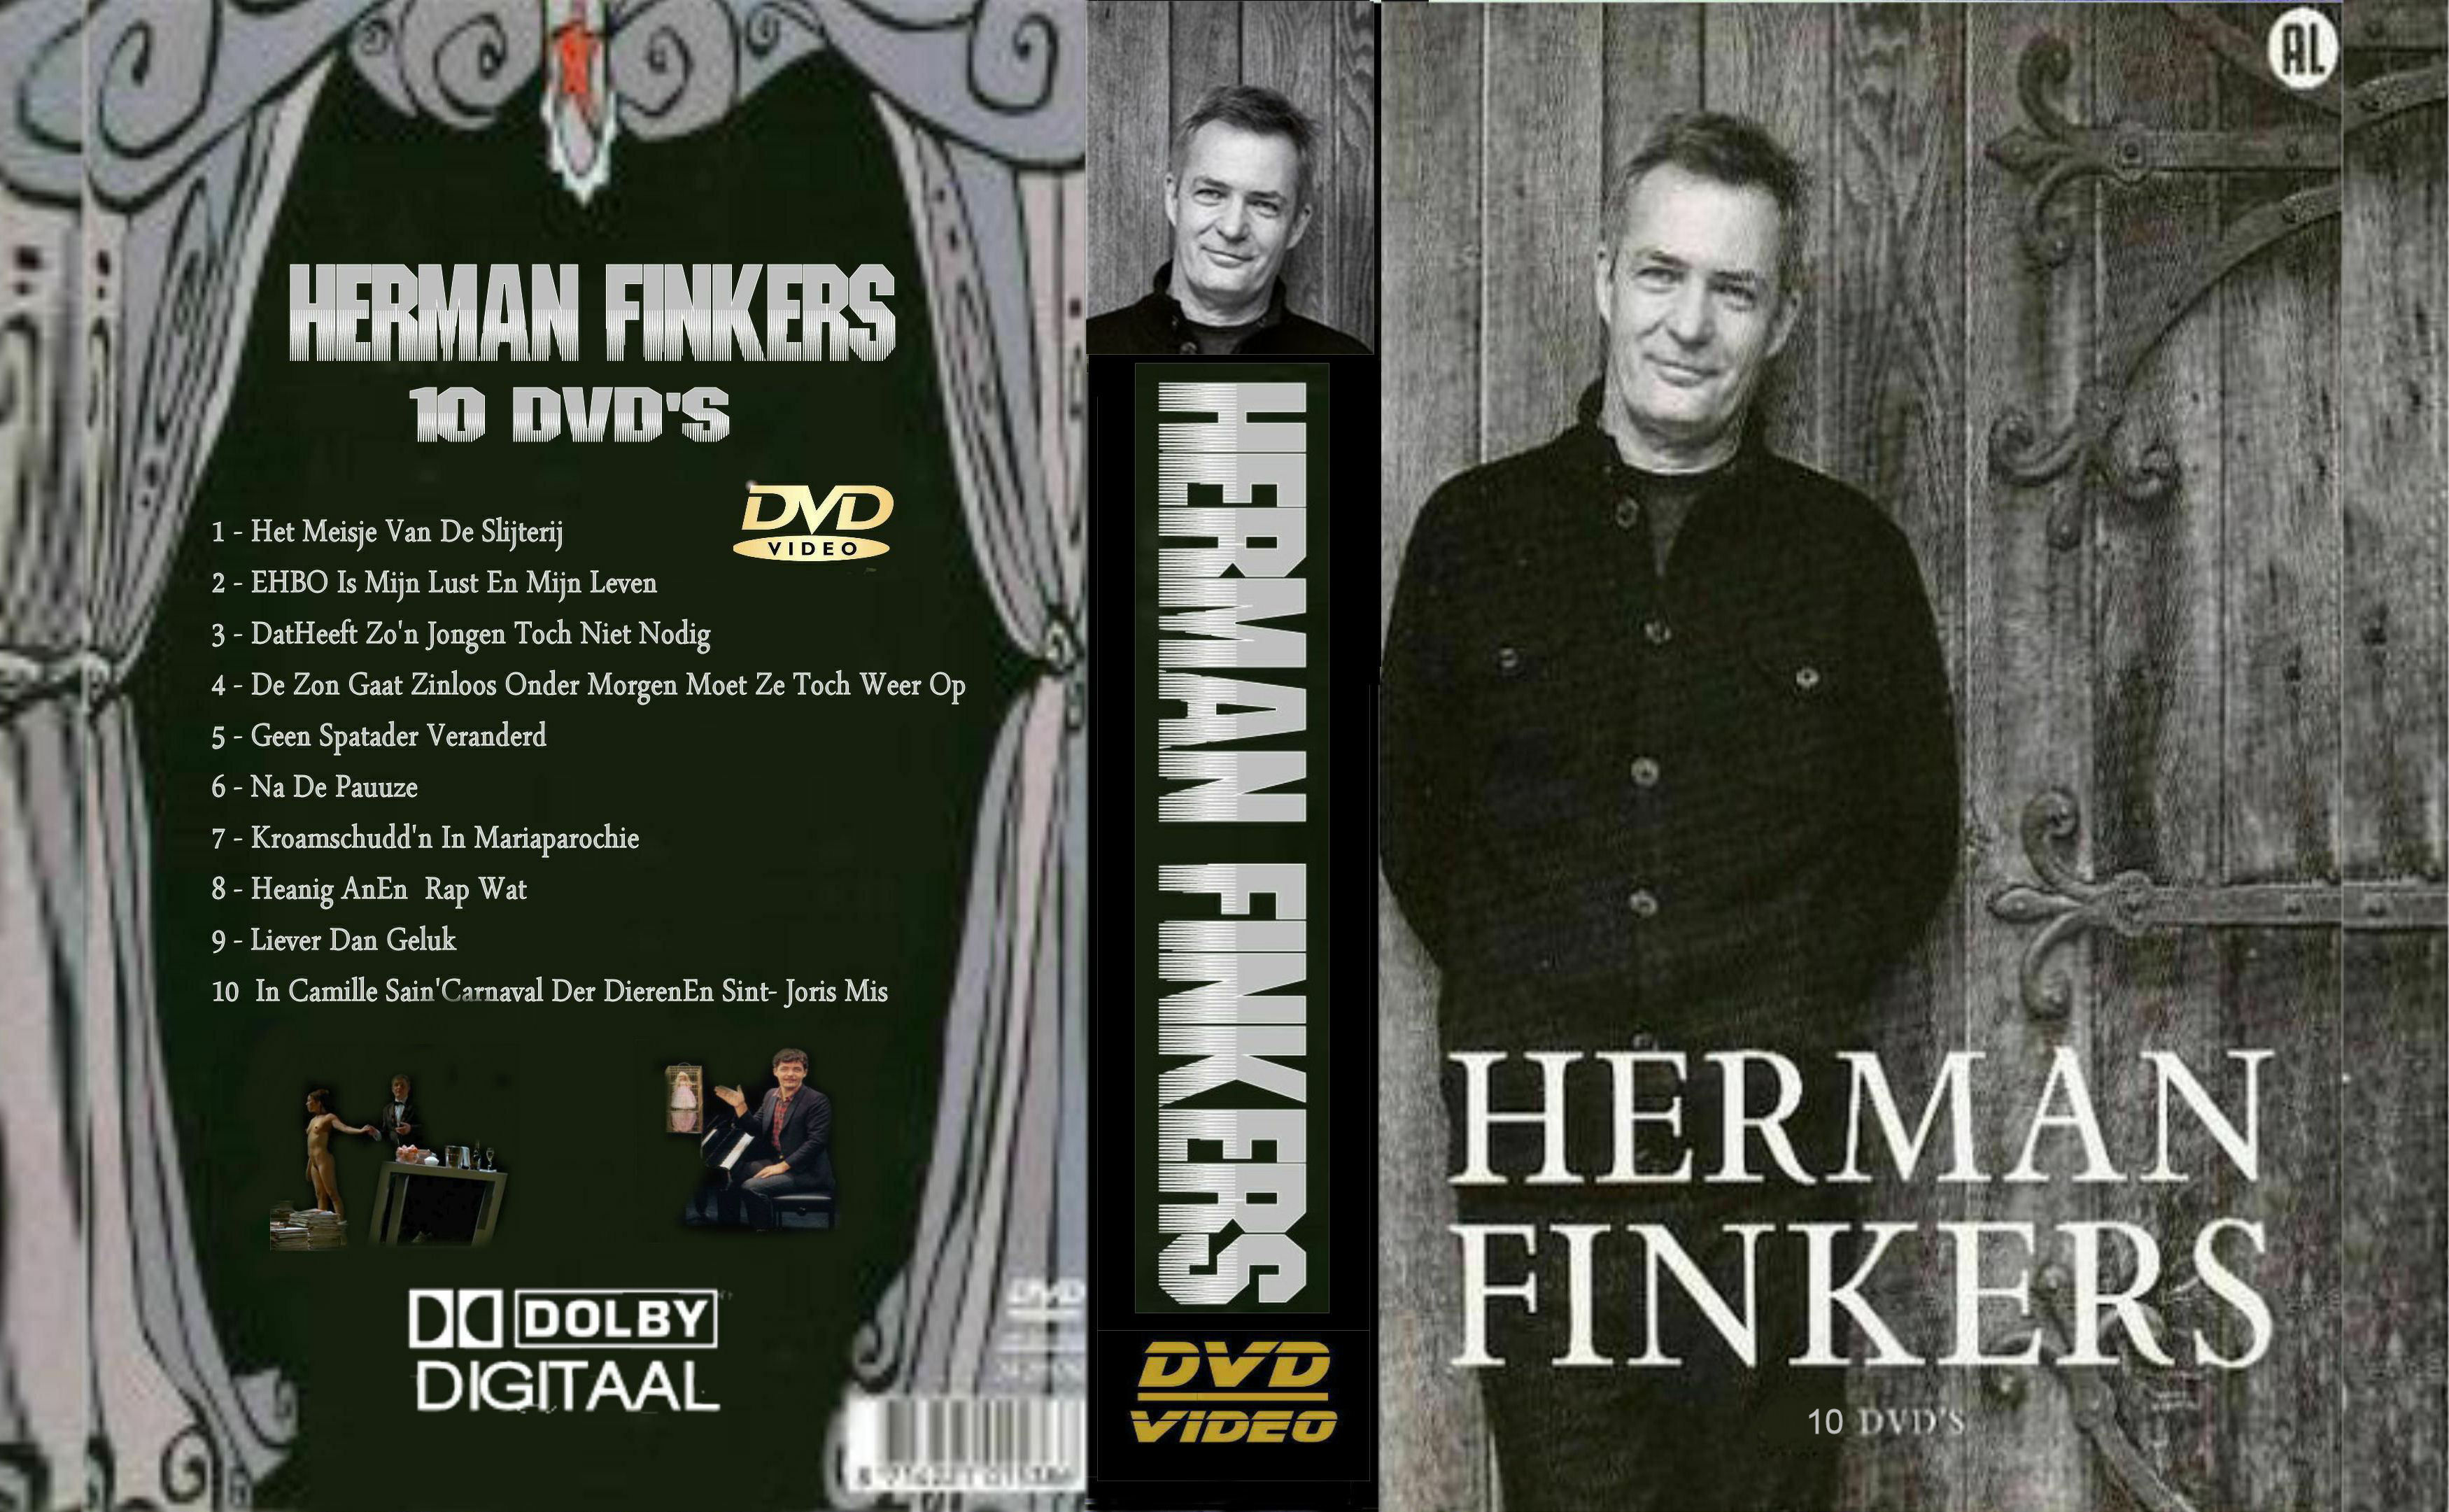 Herman Finkers Collectie DvD 8